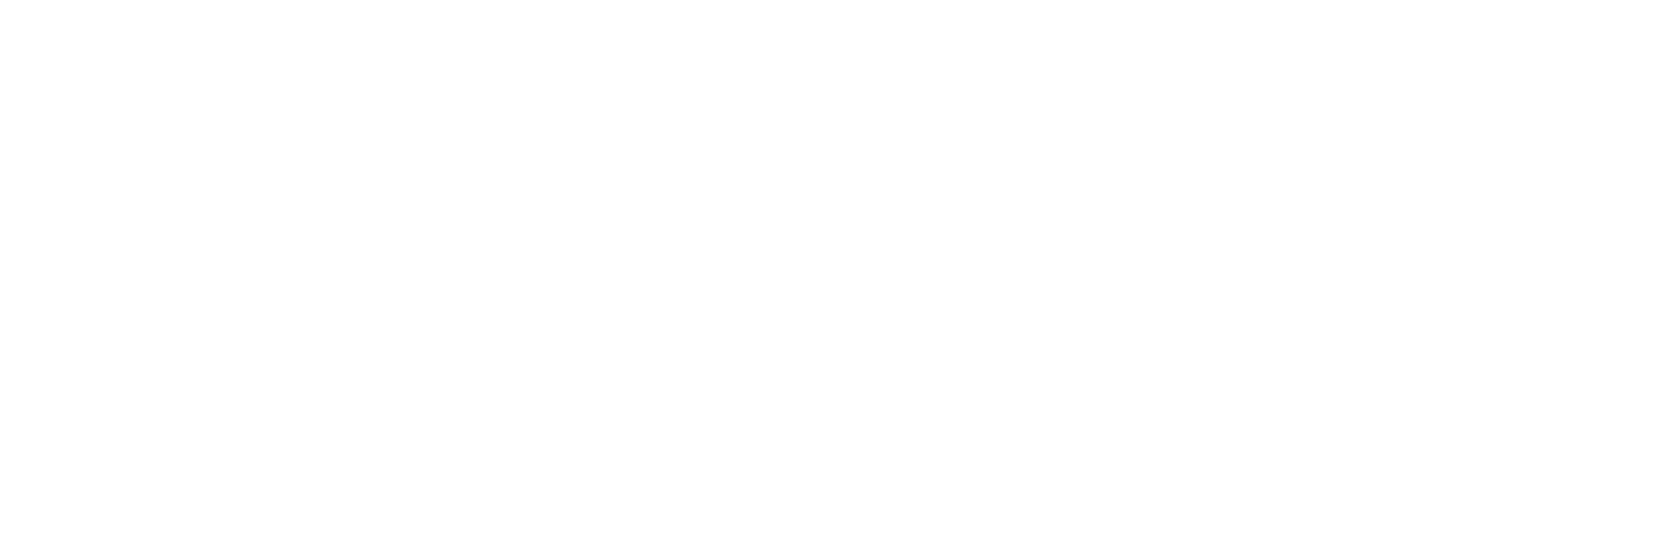 логотип мультиповар